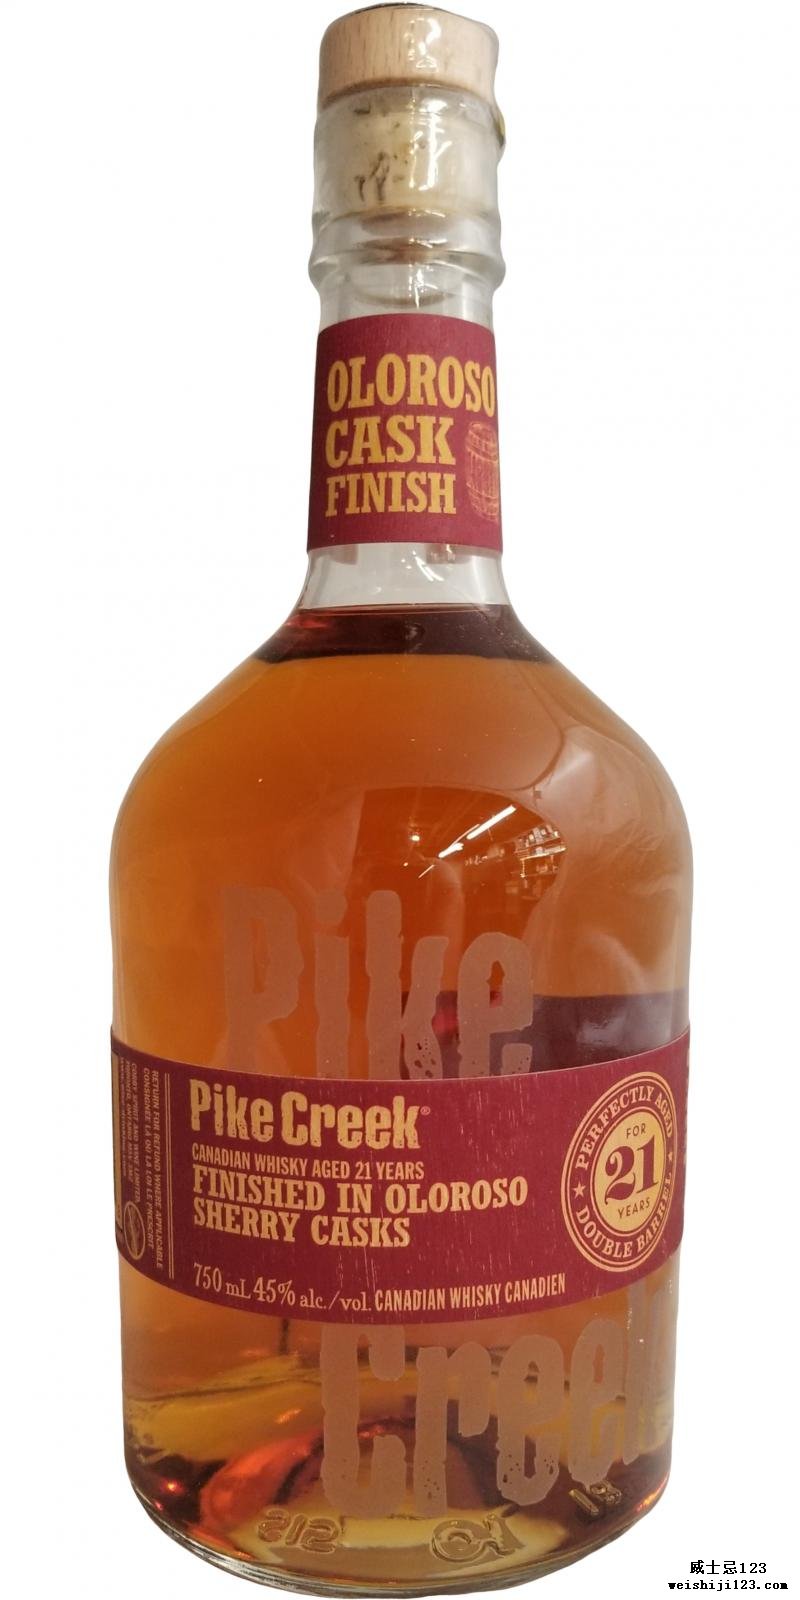 Pike Creek 21-year-old